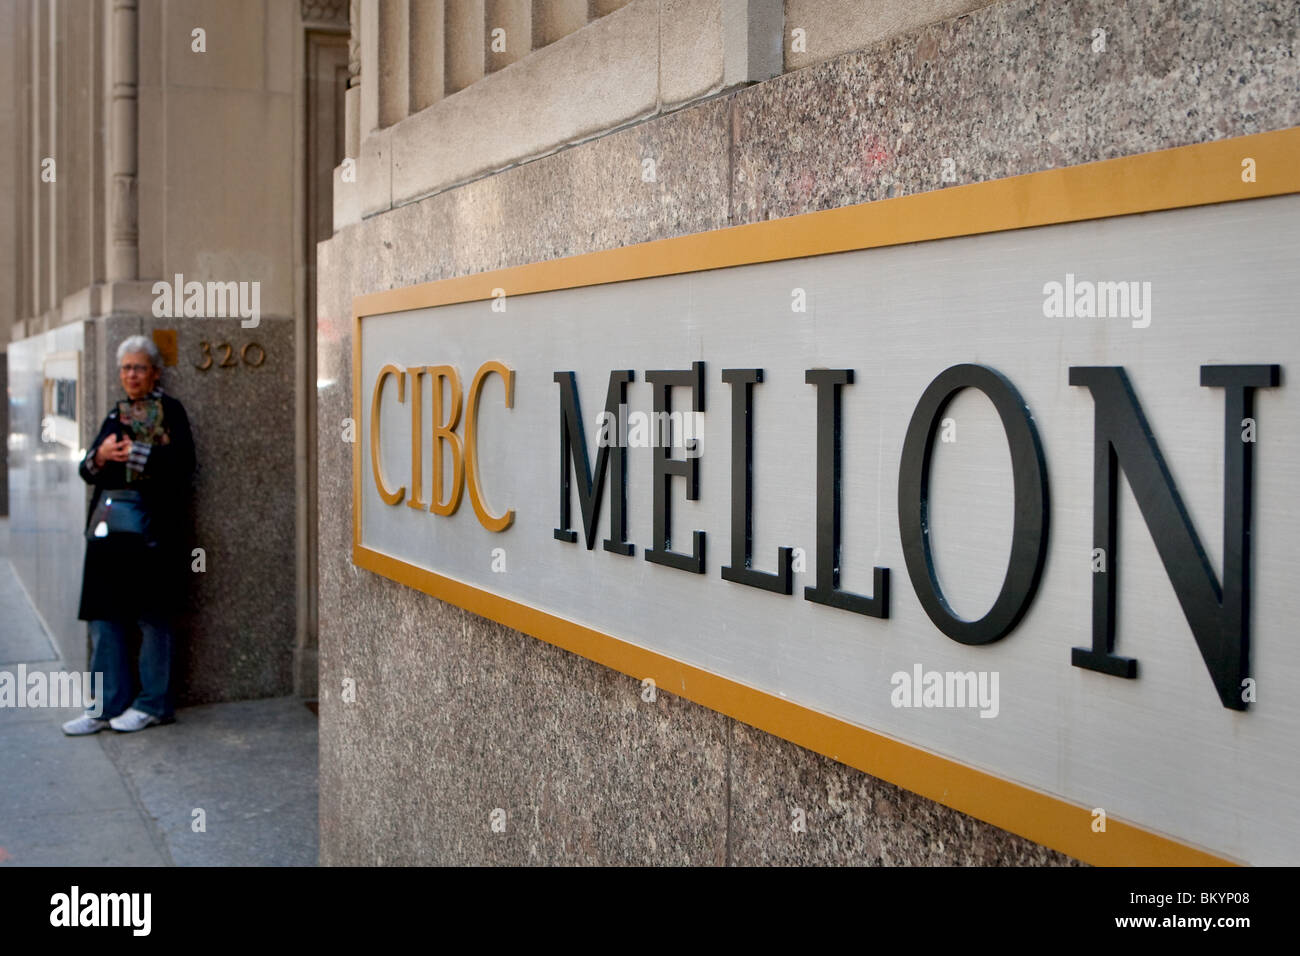 CIBC Mellon logo is seen in Toronto financial district Stock Photo